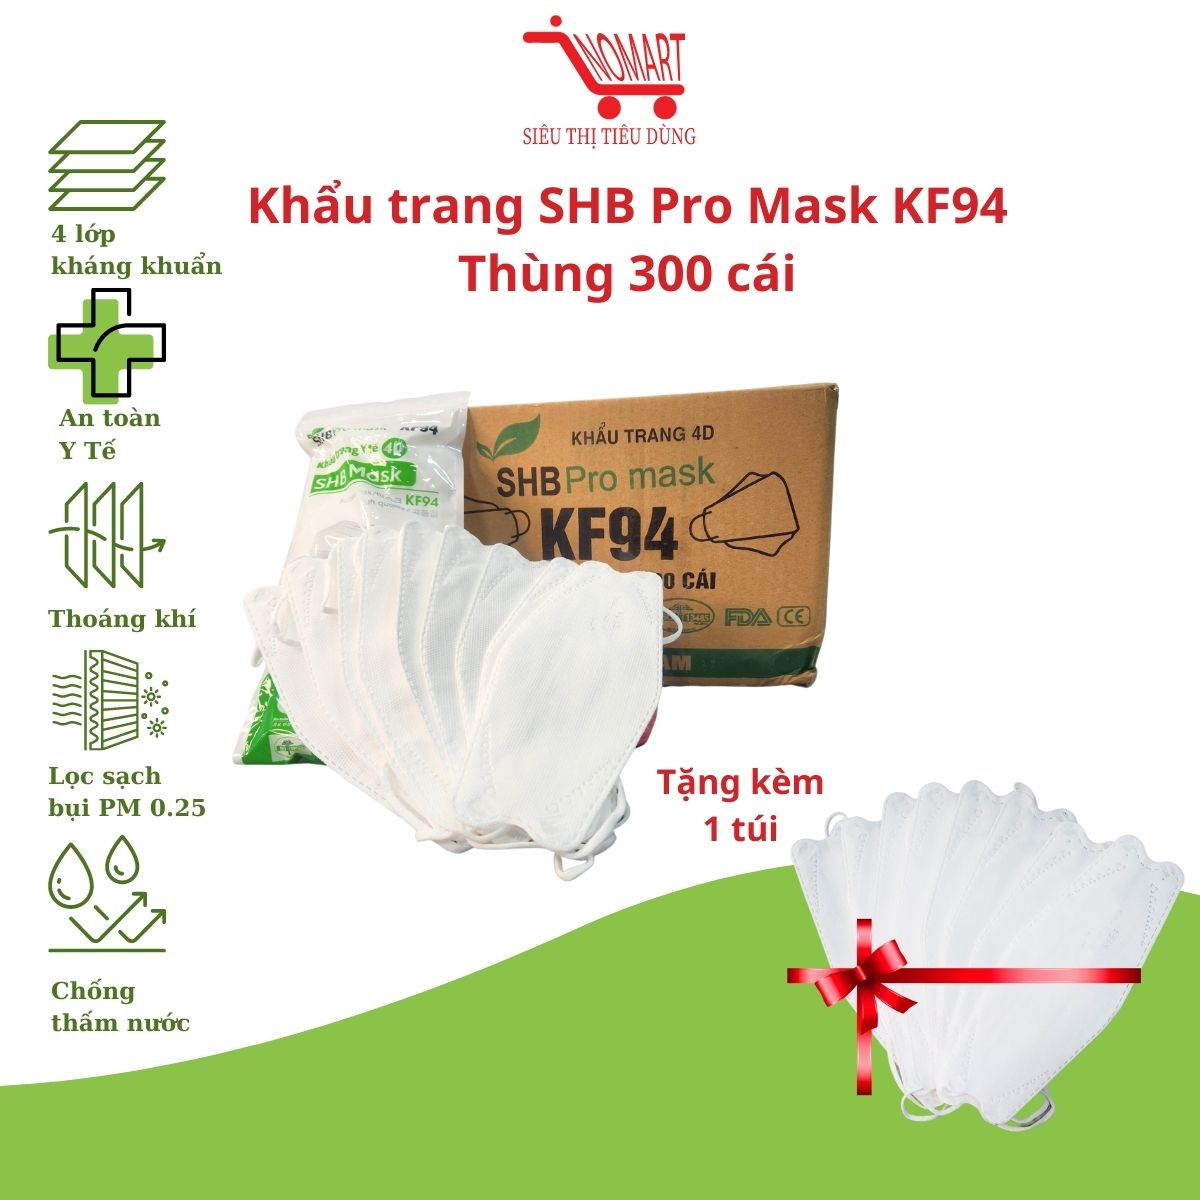 Thùng 300 cái Khẩu trang SHB Pro Mask KF94 Chính Hãng 4 lớp kháng khuẩn